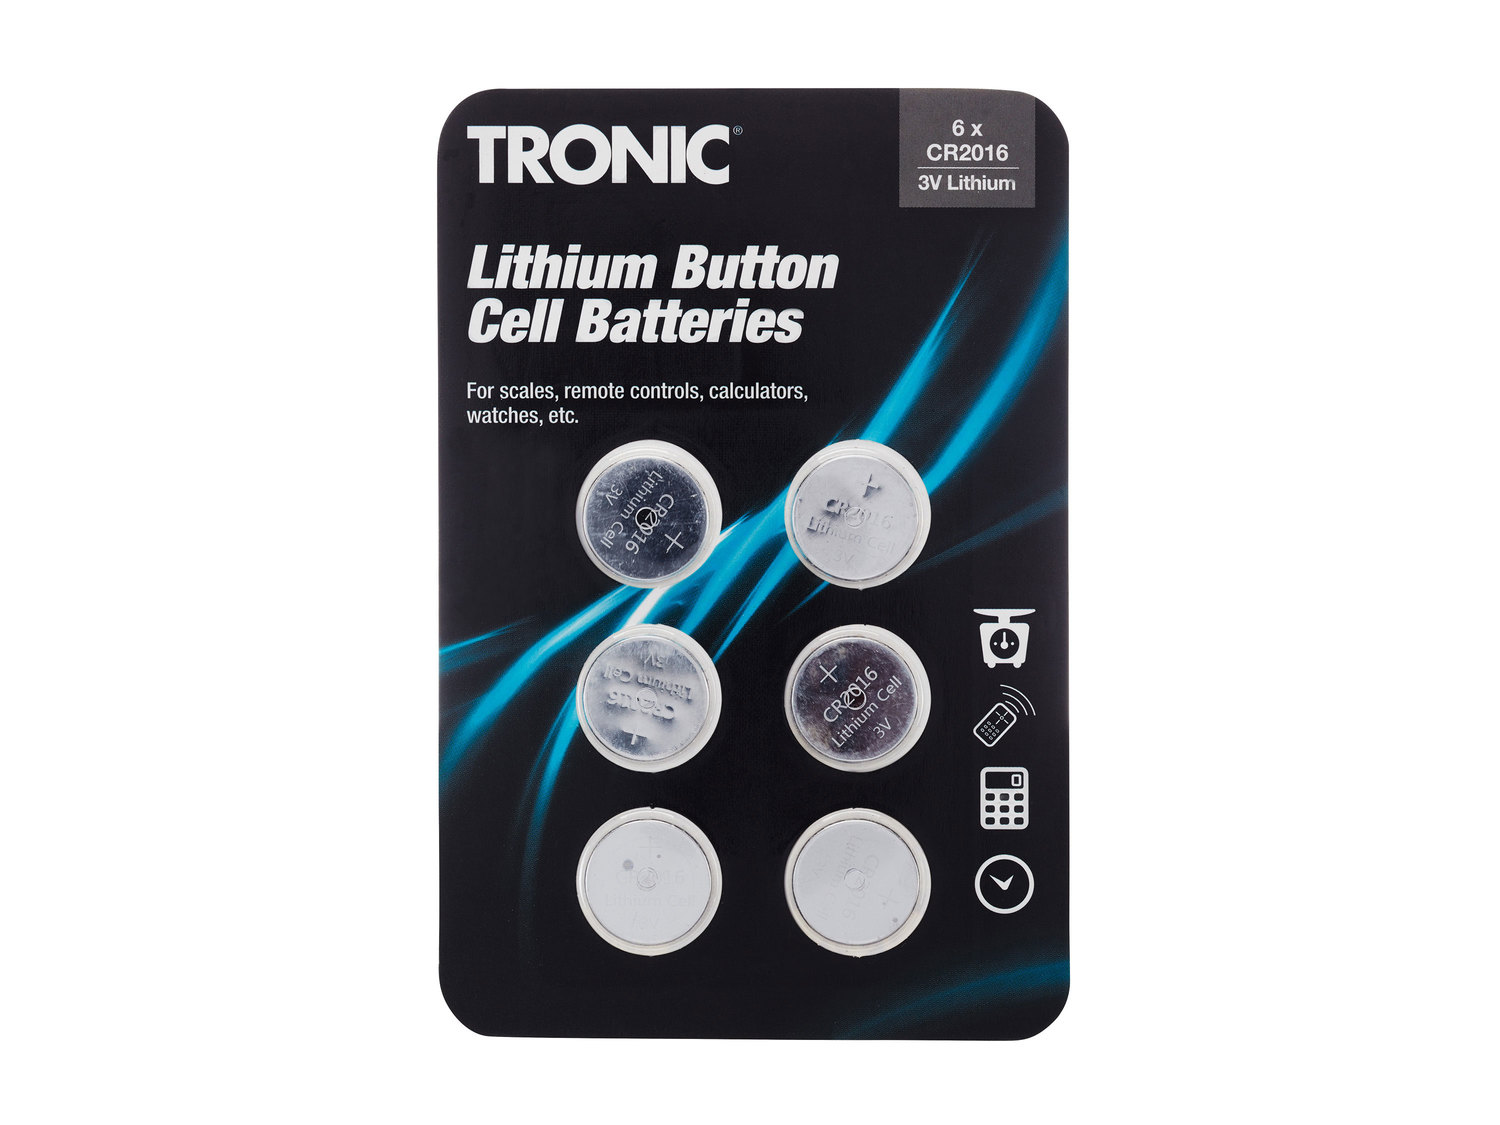 Zestaw baterii guzikowych Tronic, cena 8,99 PLN  
-  7 zestawów do wyboru